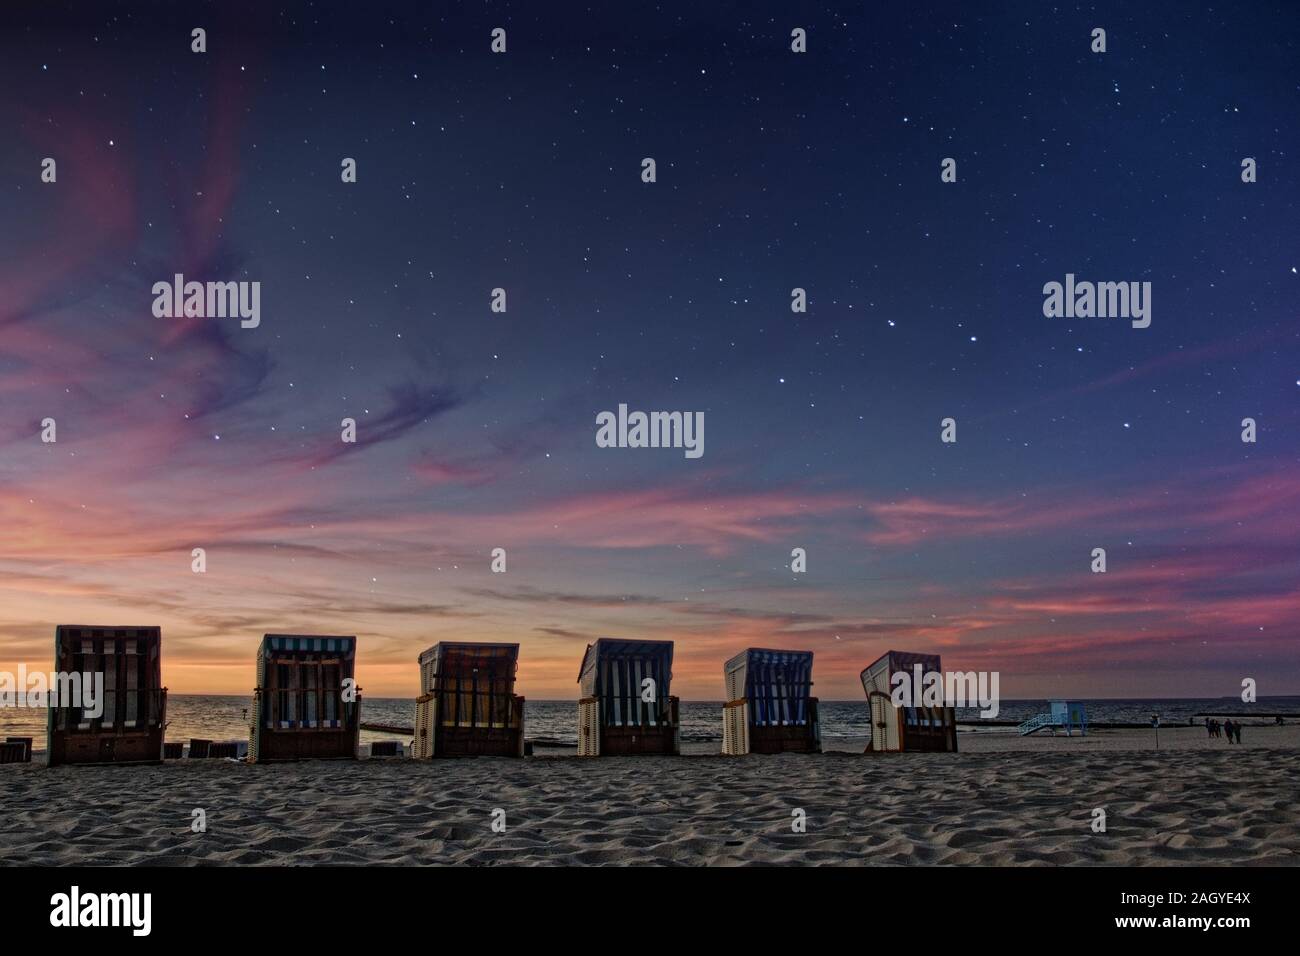 Soleil Ligne de sièges sur la plage Baltique quand le jour et nuit des étoiles apparaissent Banque D'Images